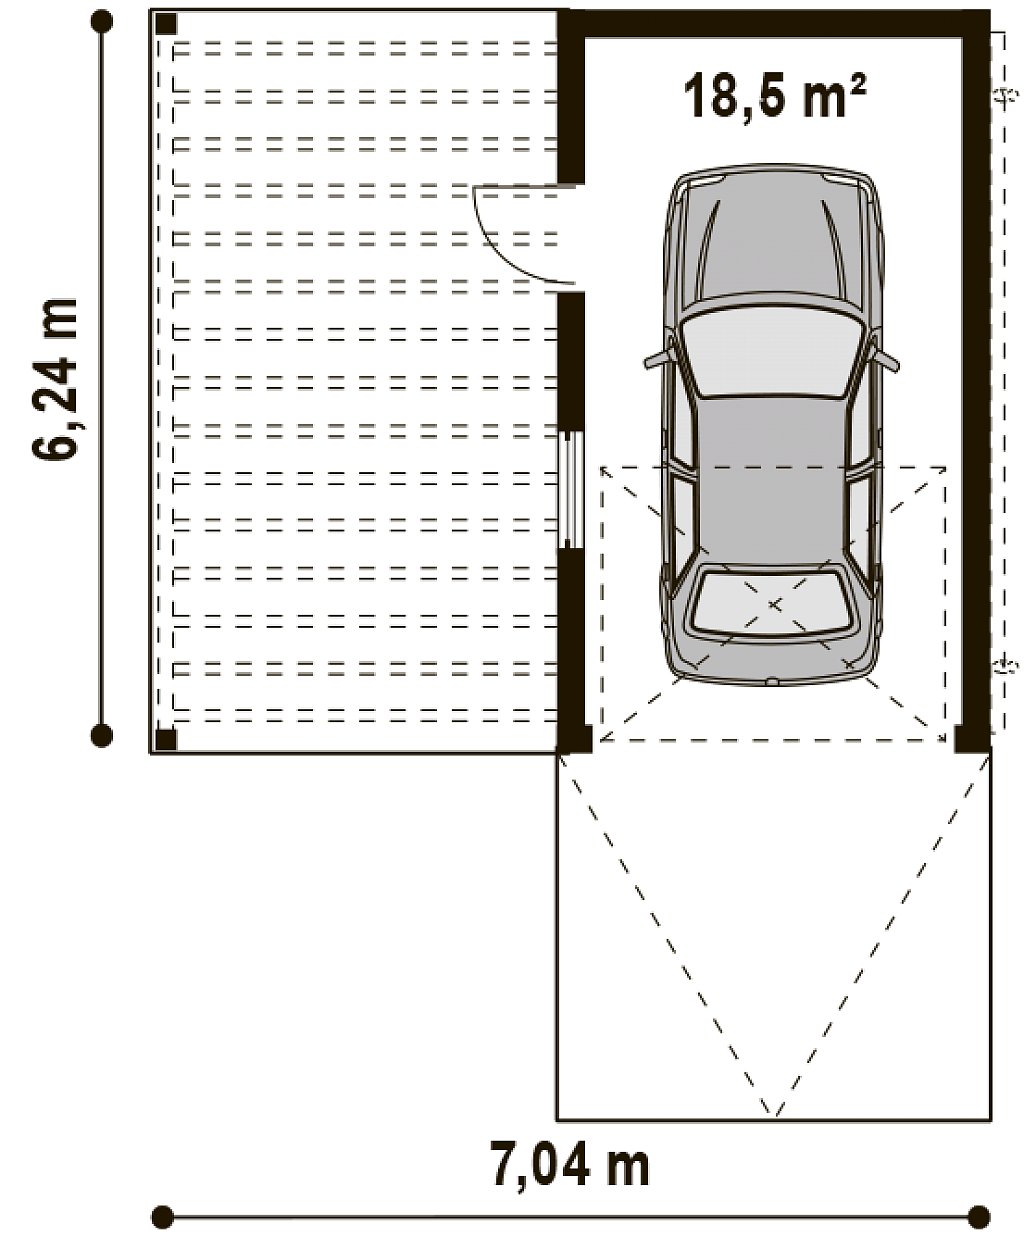 Оптимальные размеры гаража на 1 машину: расчет минимальной ширины на один автомобиль в частном доме